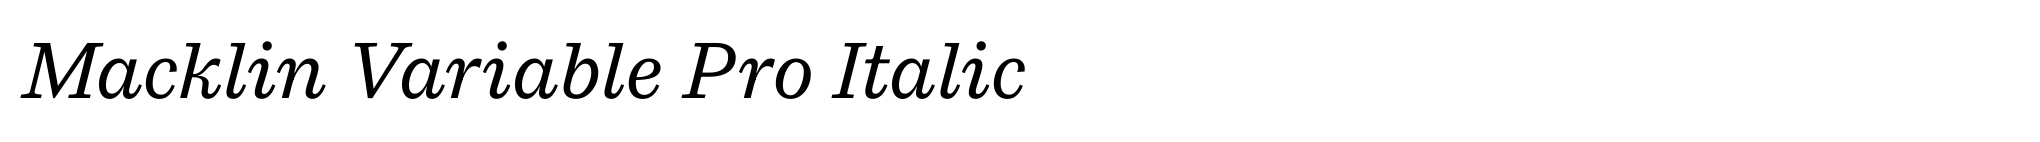 Macklin Variable Pro Italic image